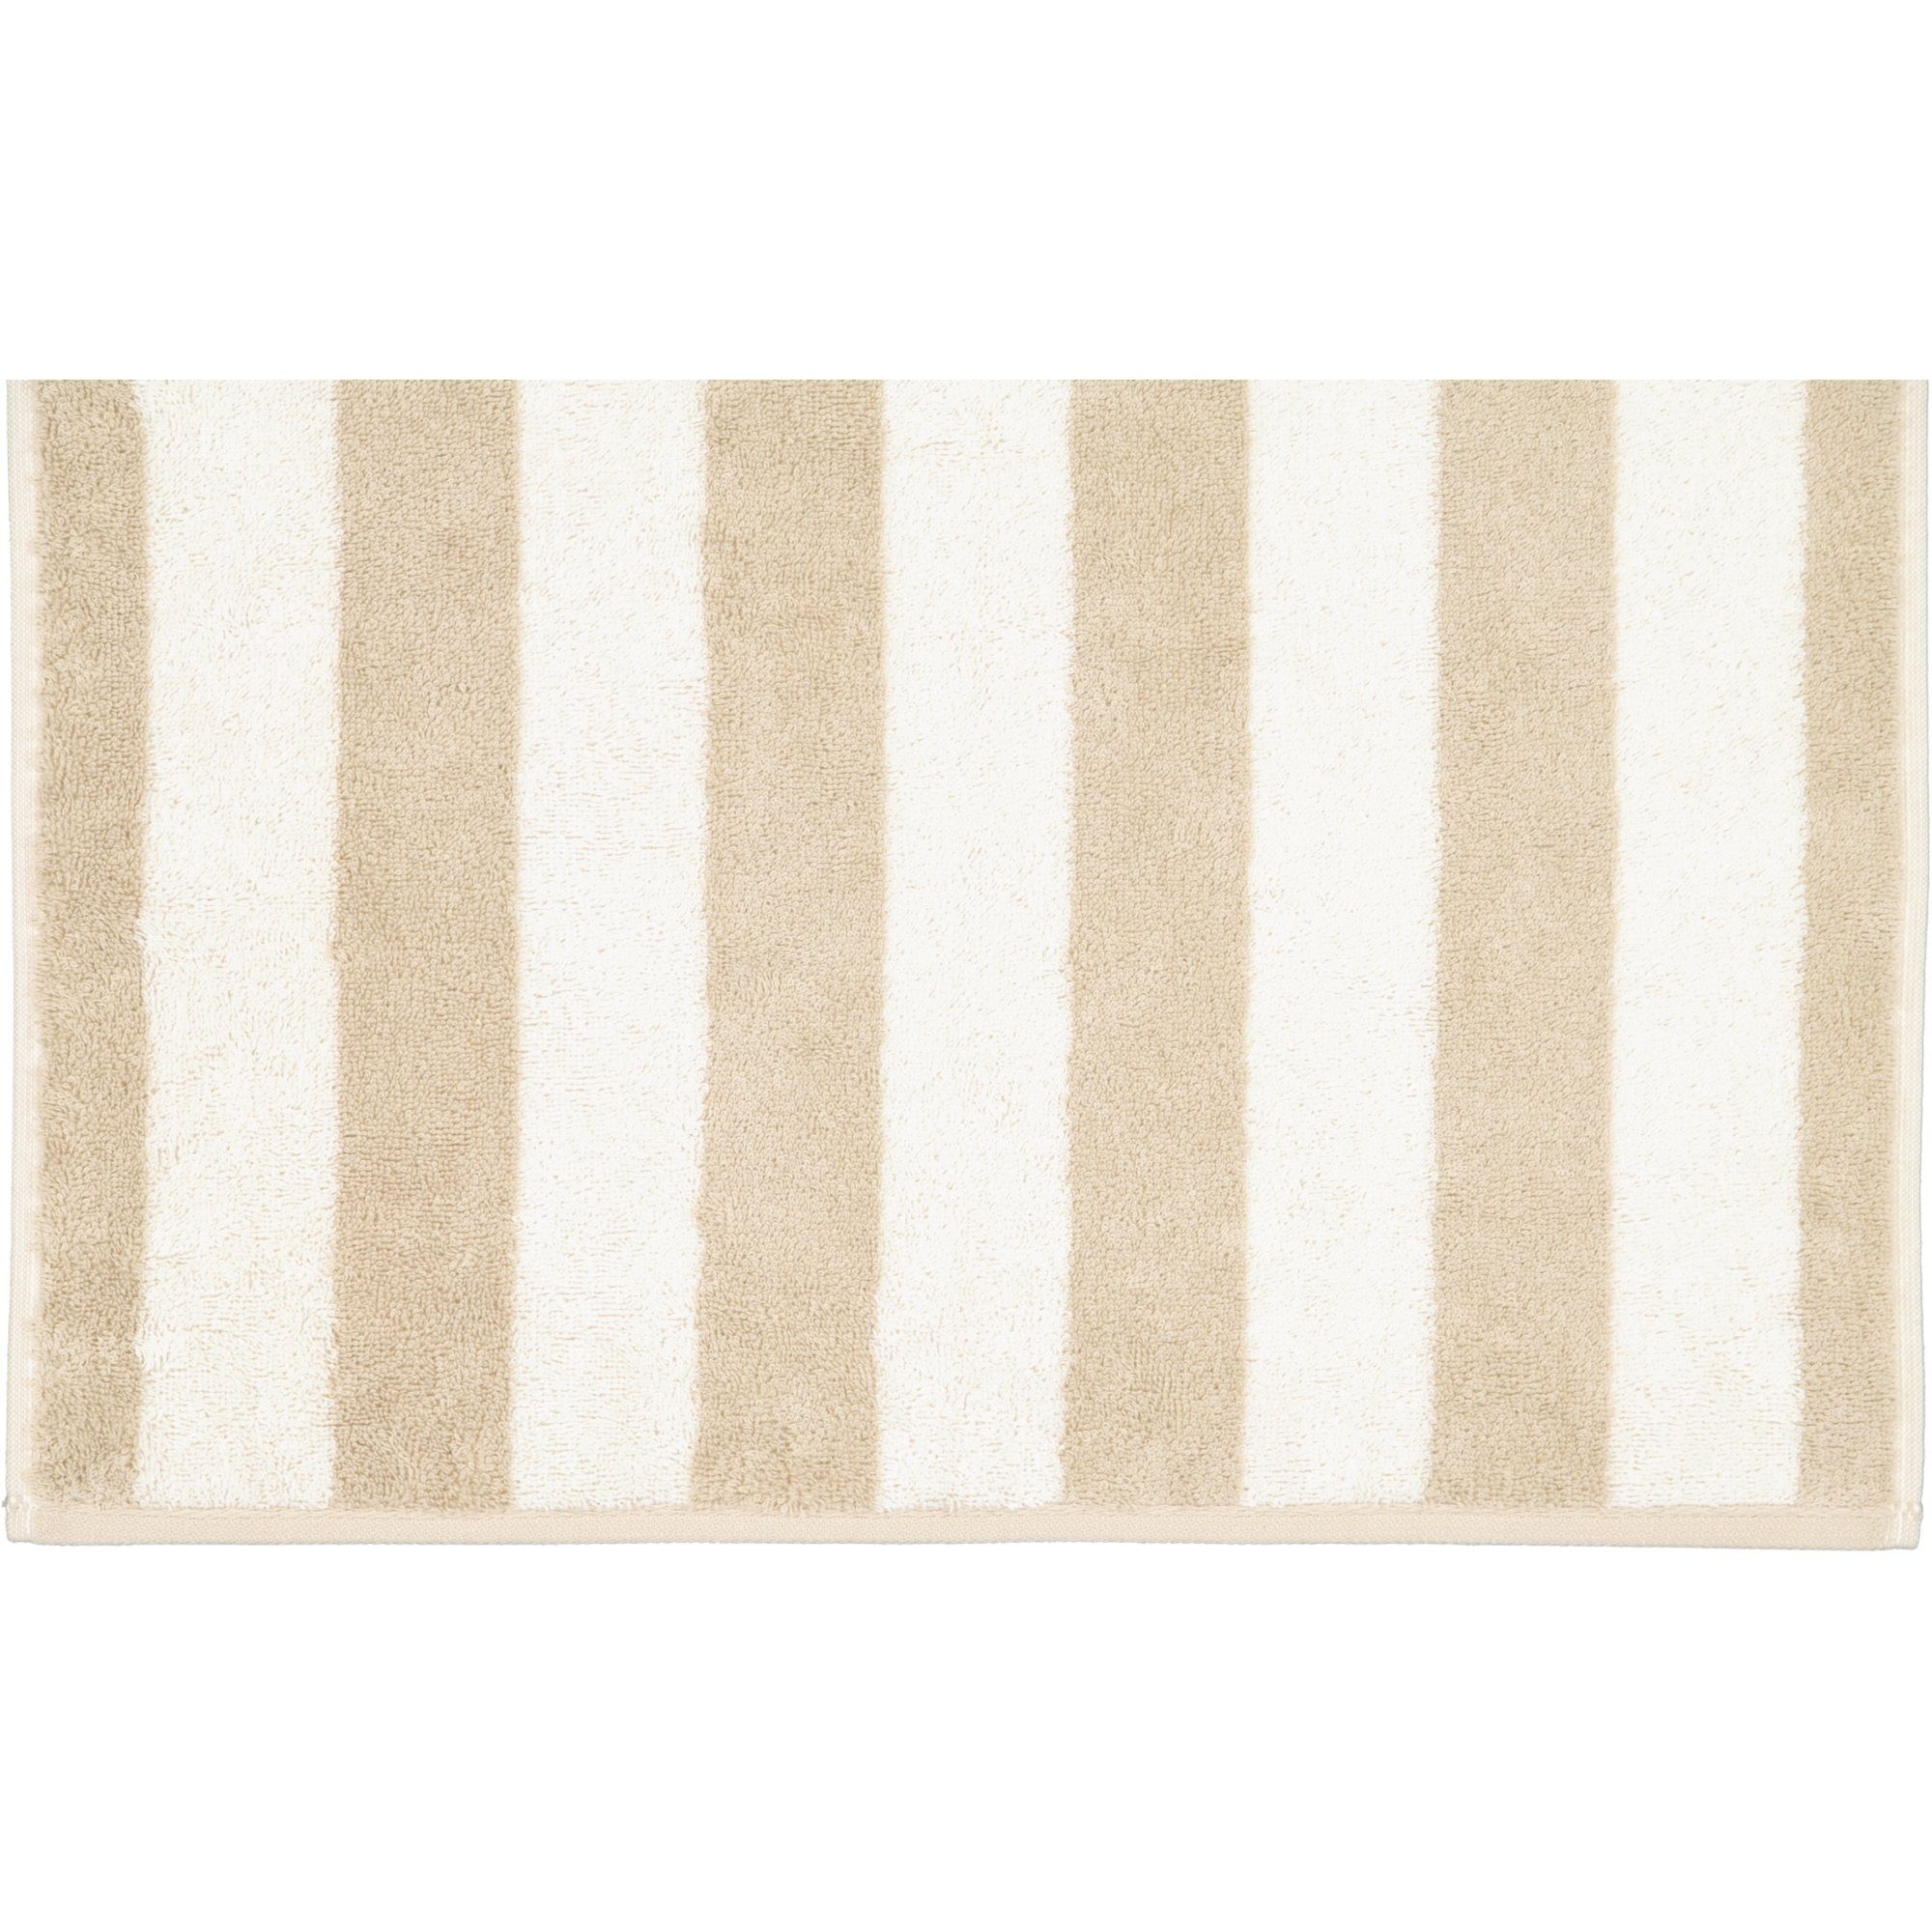 Handtücher Stripes Baumwolle 6212, Gallery Cawö 100%